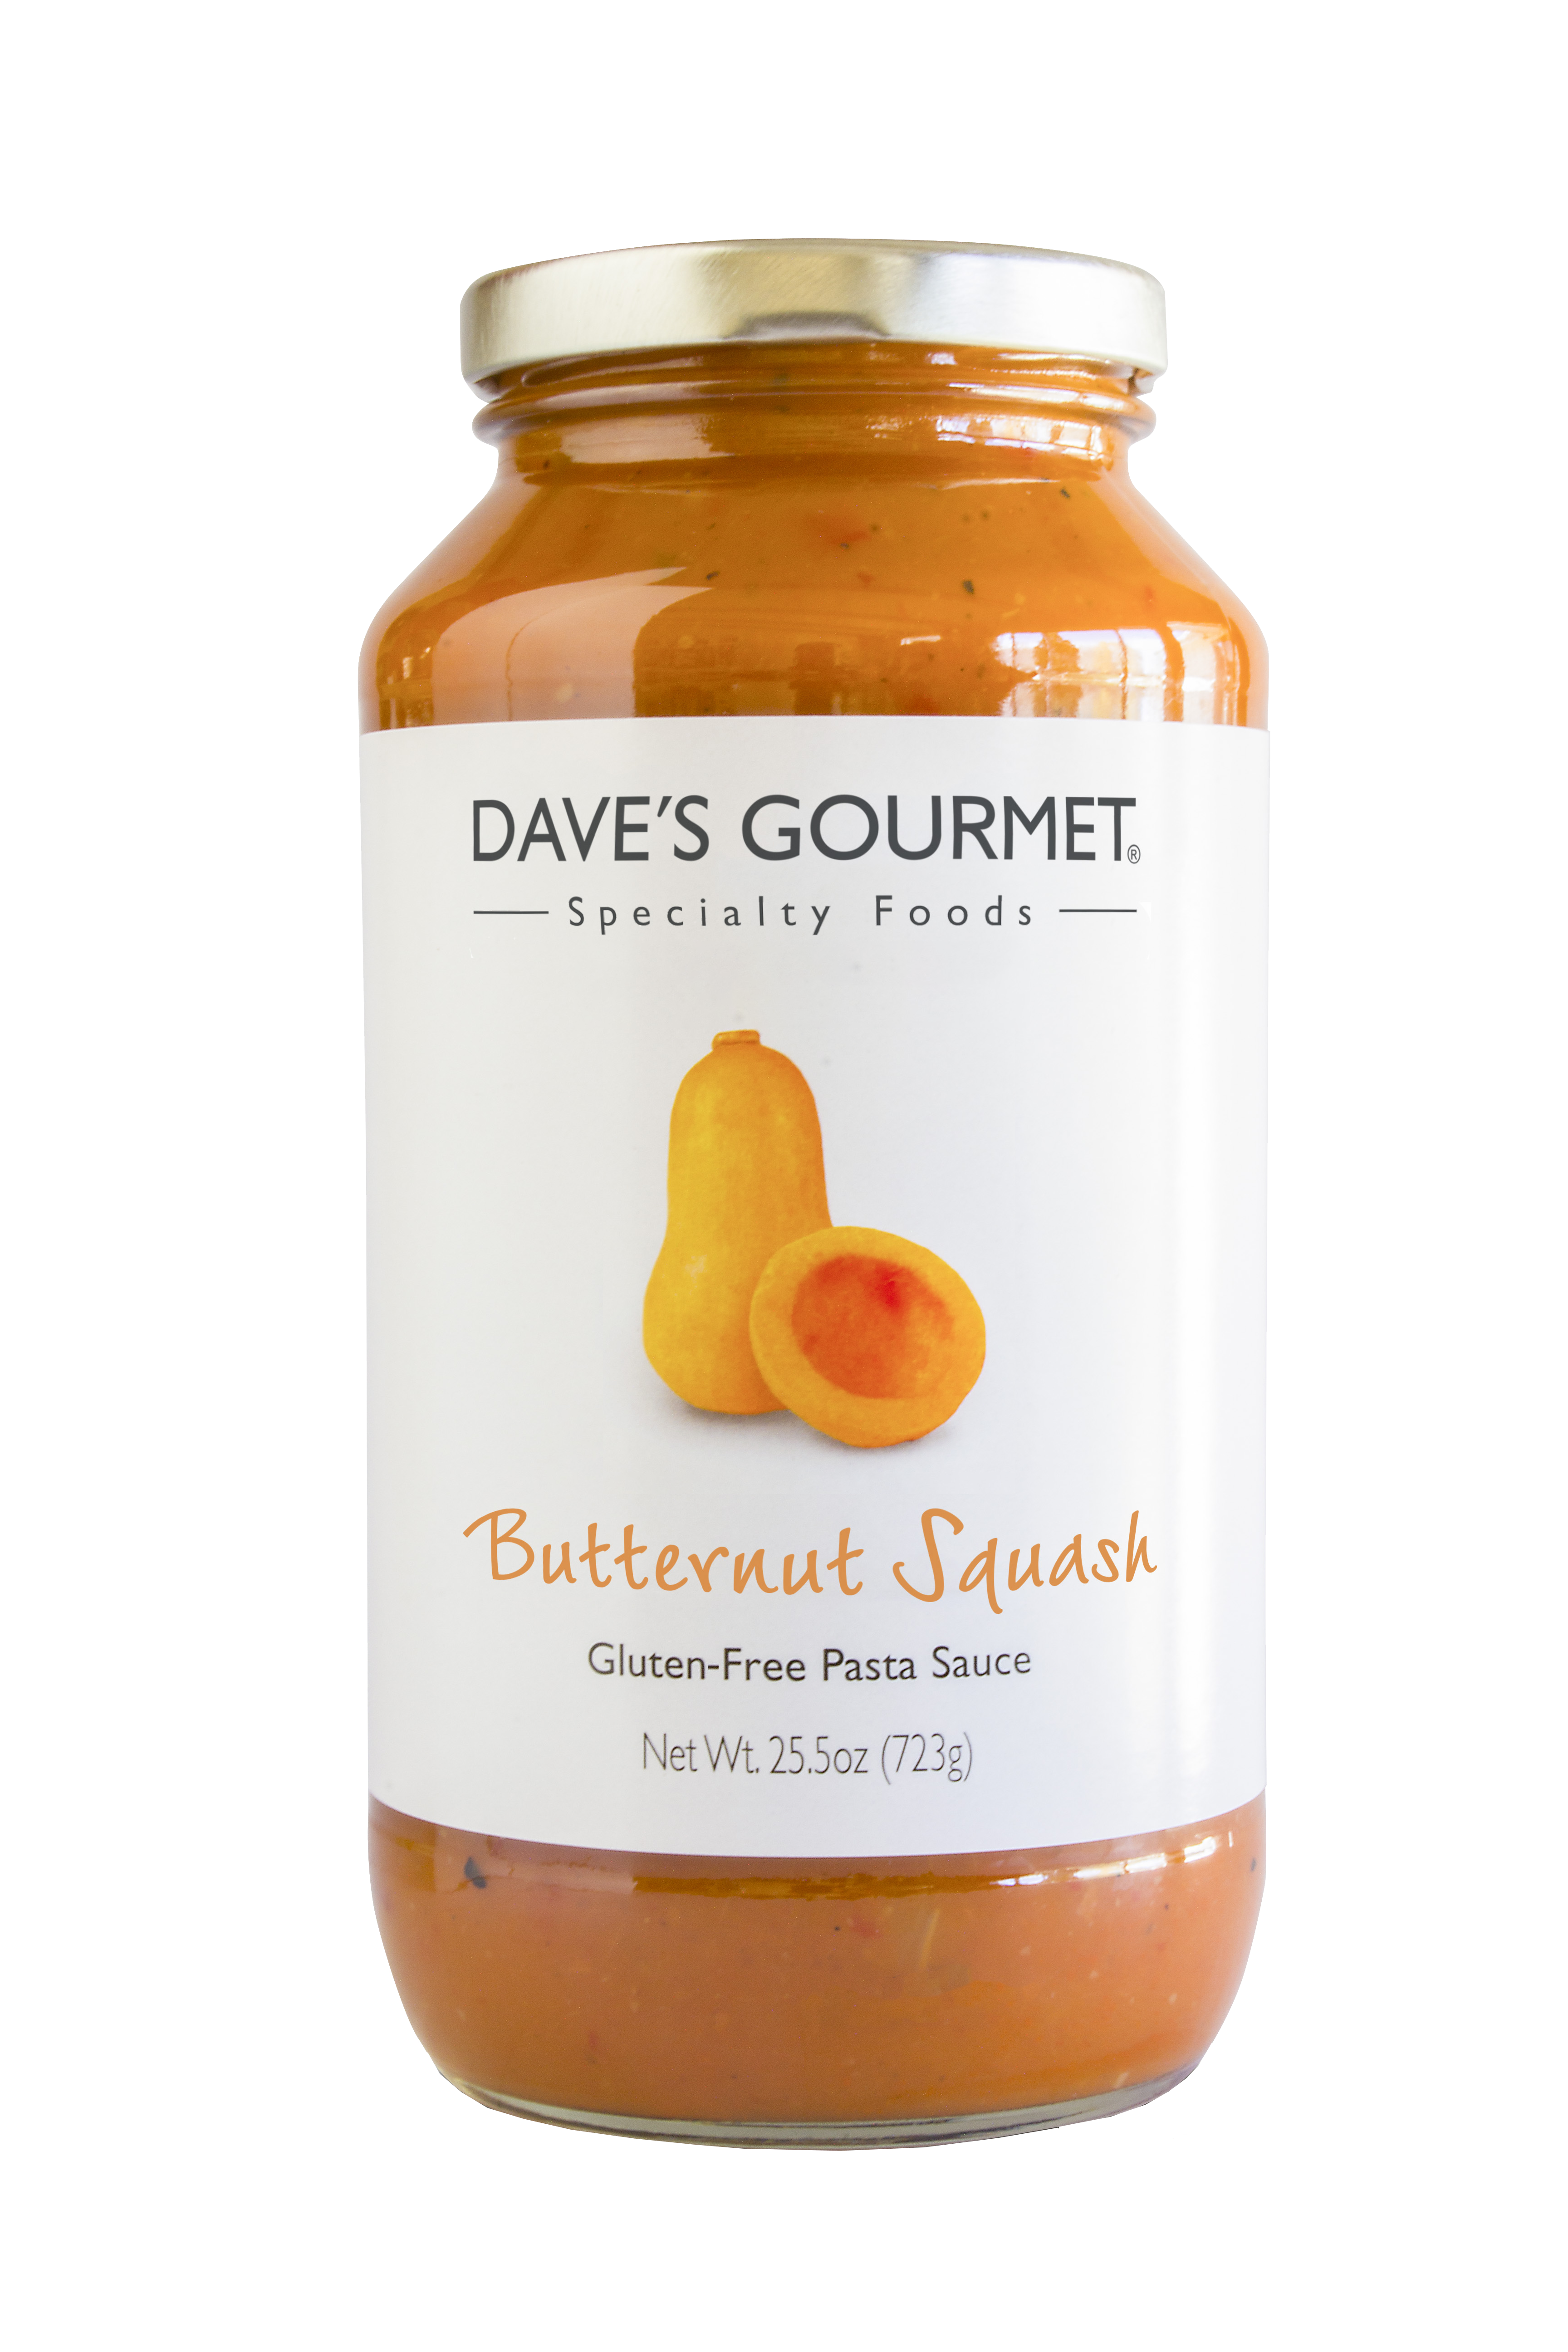 A jar of Dave's Gourmet Butternut Squash Pasta Sauce Net wt. 25.5 oz